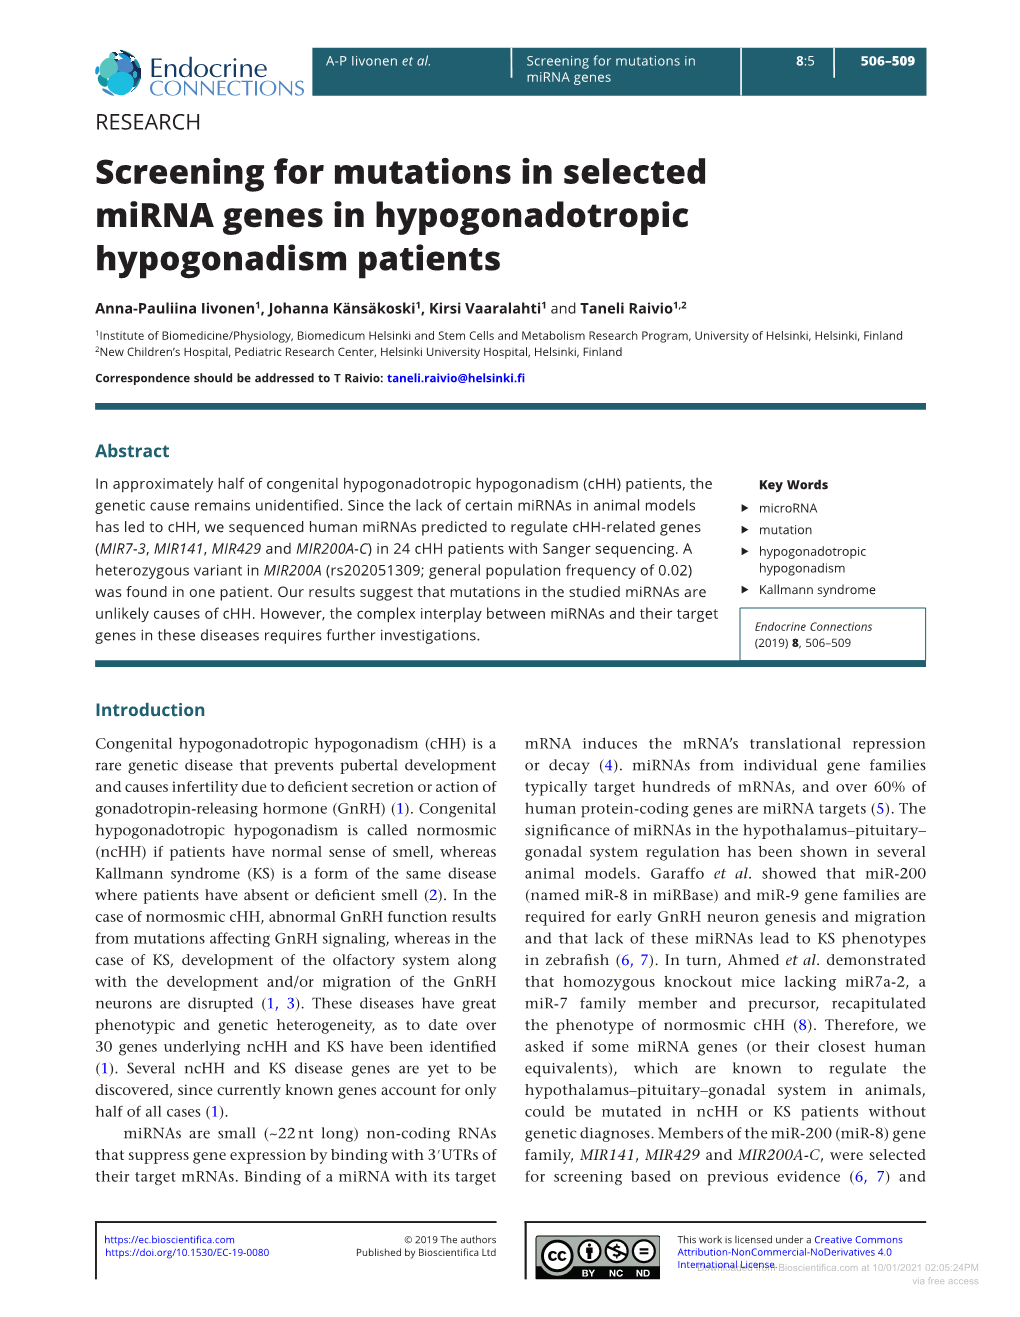 Screening for Mutations in Selected Mirna Genes in Hypogonadotropic Hypogonadism Patients